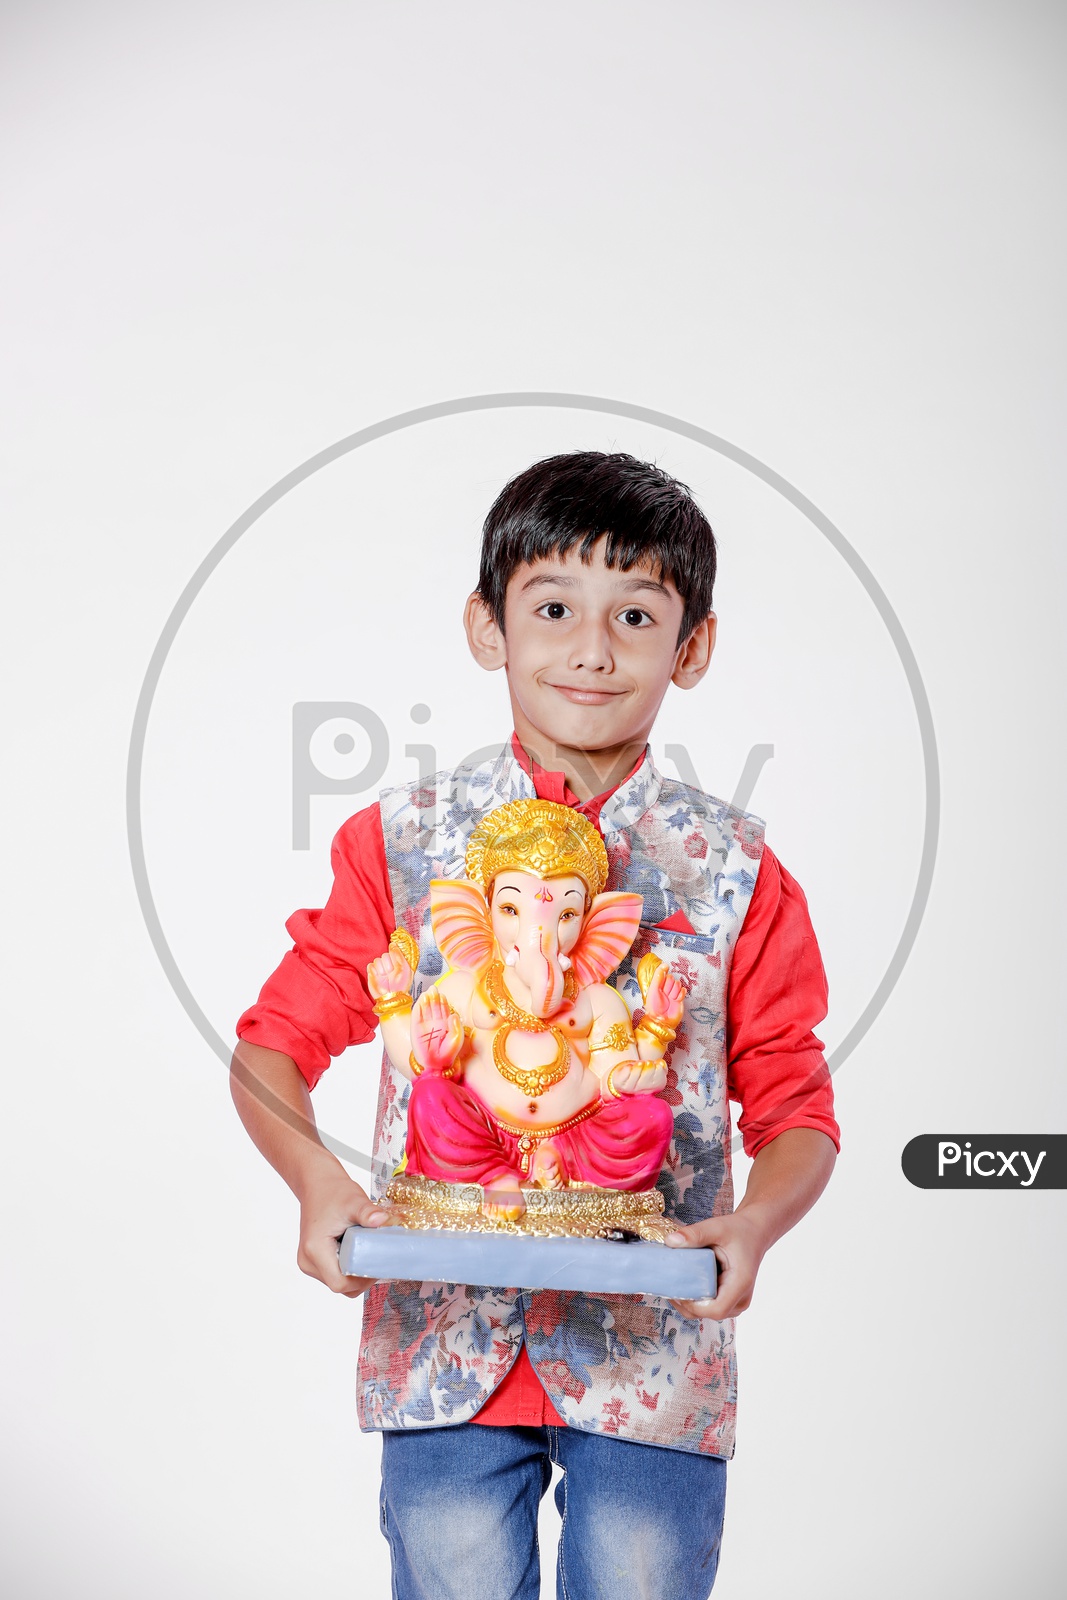 Indian Boy Child  with Lord Ganesh Idol